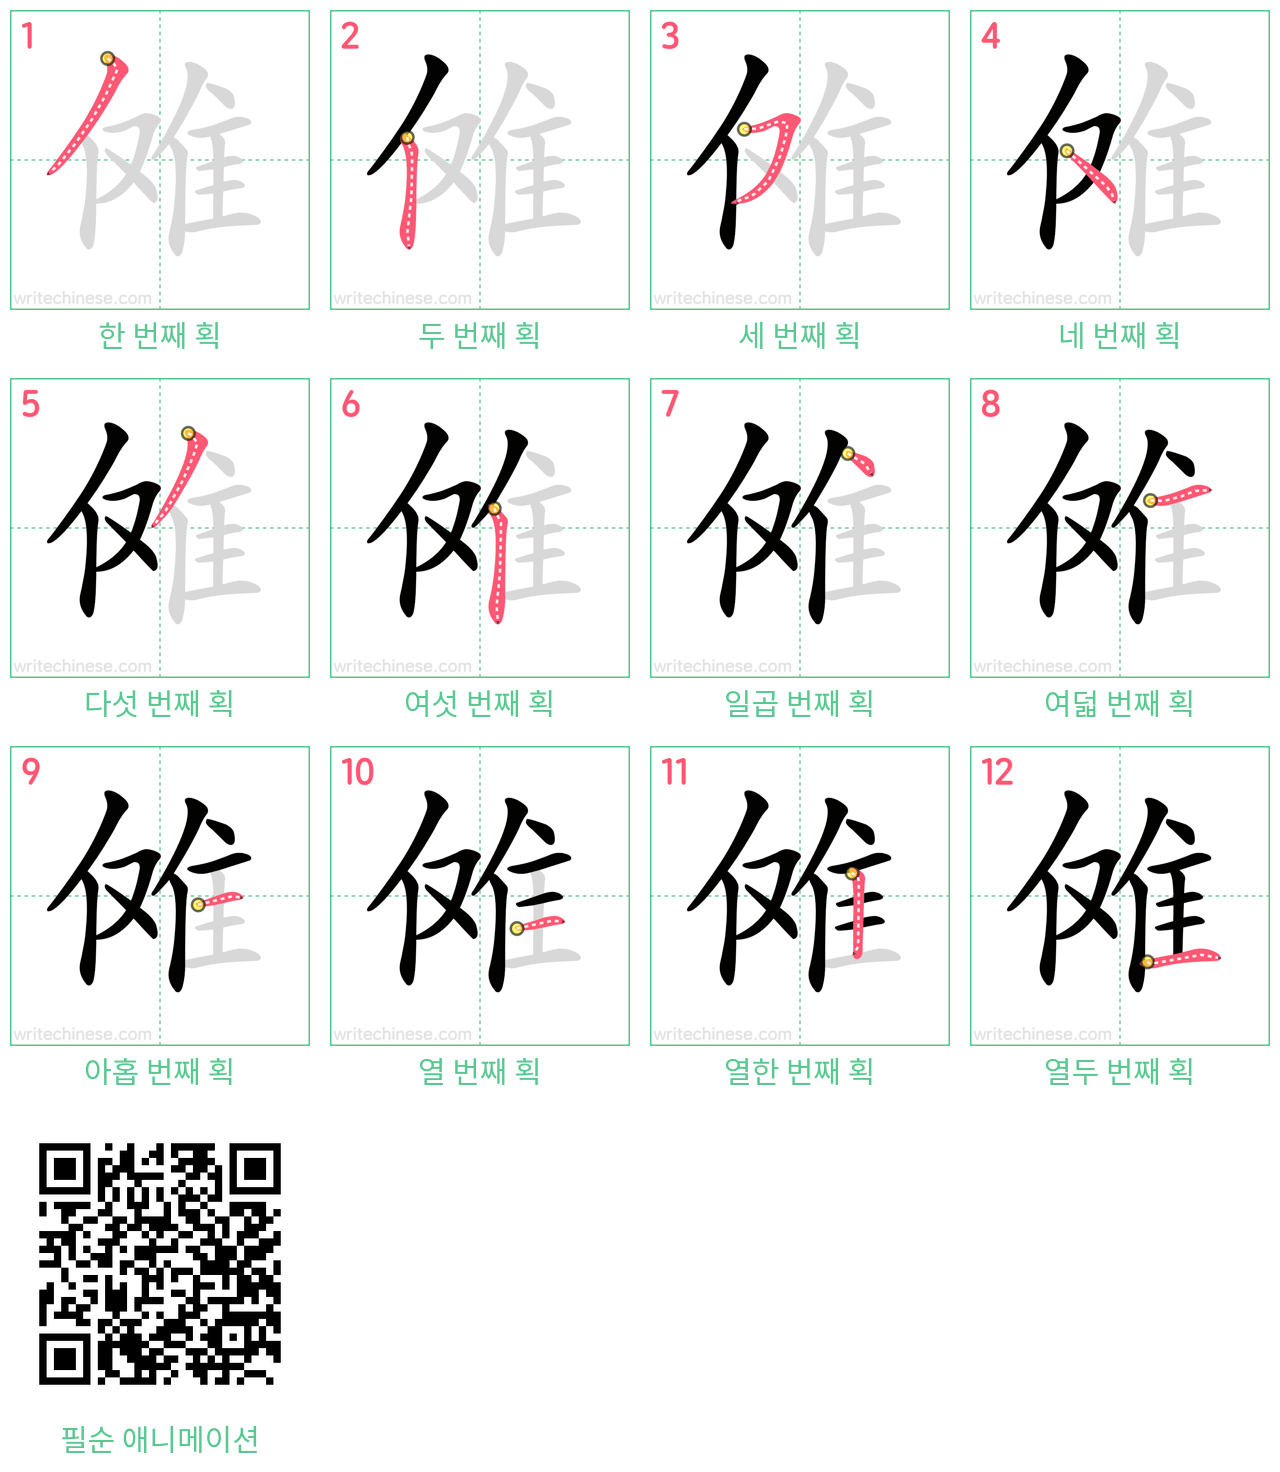 傩 step-by-step stroke order diagrams